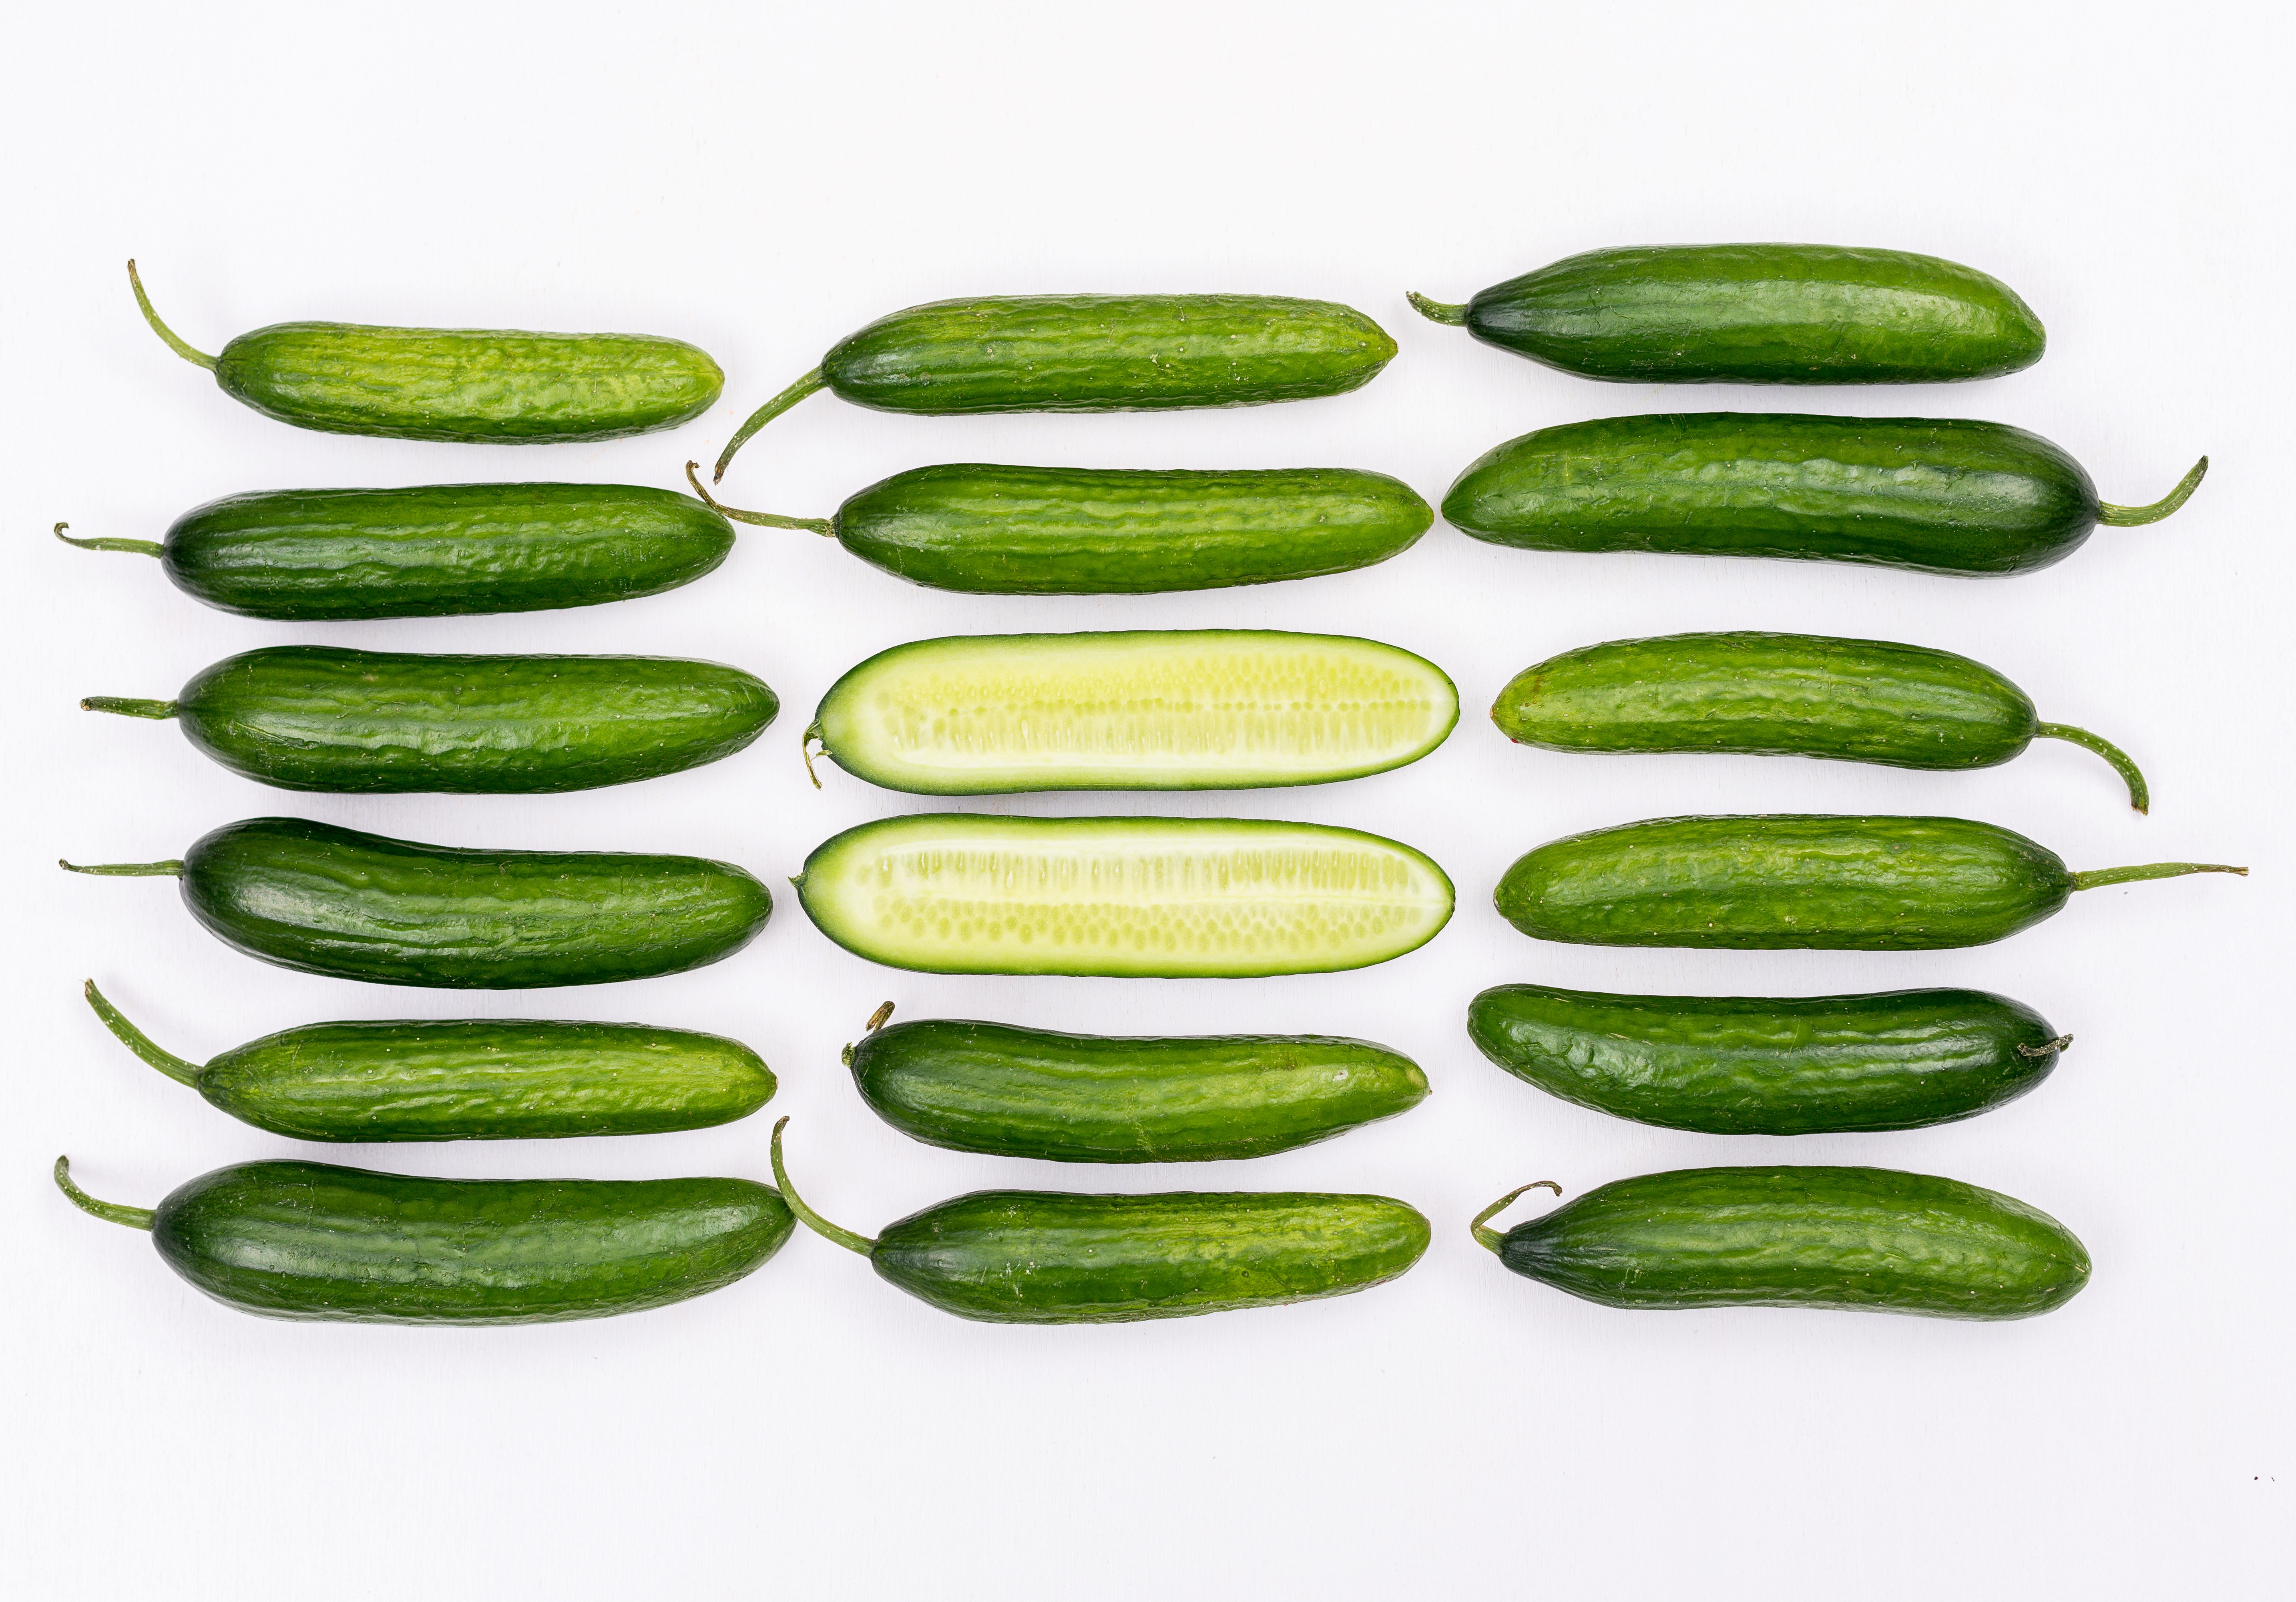 오이를 가지런하게 가로 3줄&#44; 세로 6줄로 한개씩 놓아두고 가운데 2개는 반으로 잘라 놓은 사진 (top-view-cucumber-sliced-middle-white-horizontal)